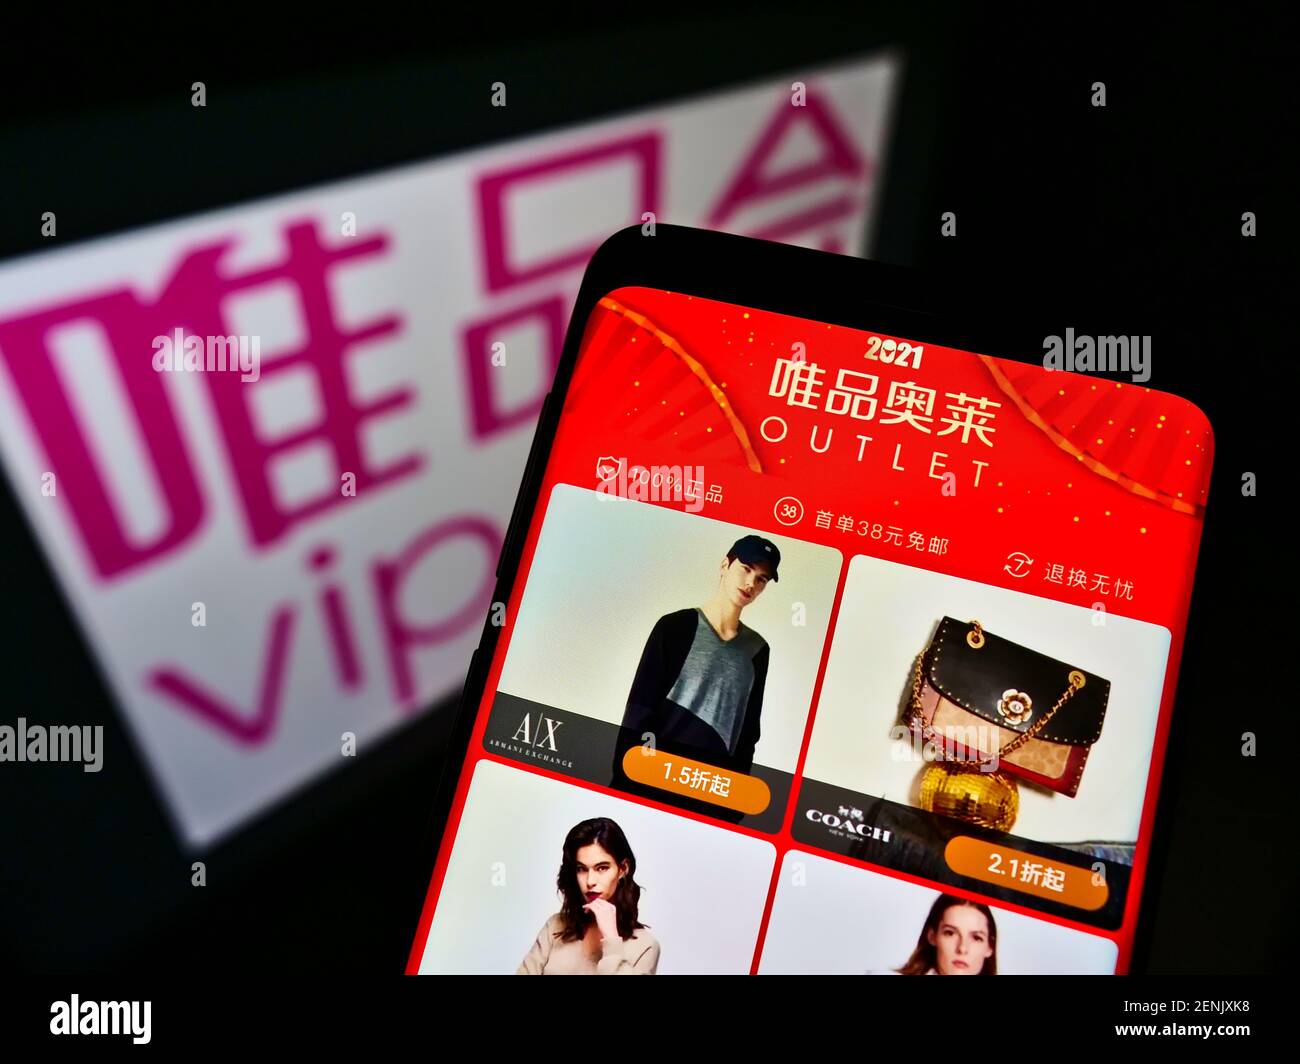 Telefono cellulare con negozio online della società cinese Vipshop Holdings Ltd (VIP.com) su schermo davanti al logo. Mettere a fuoco la parte superiore centrale del display del telefono. Foto Stock